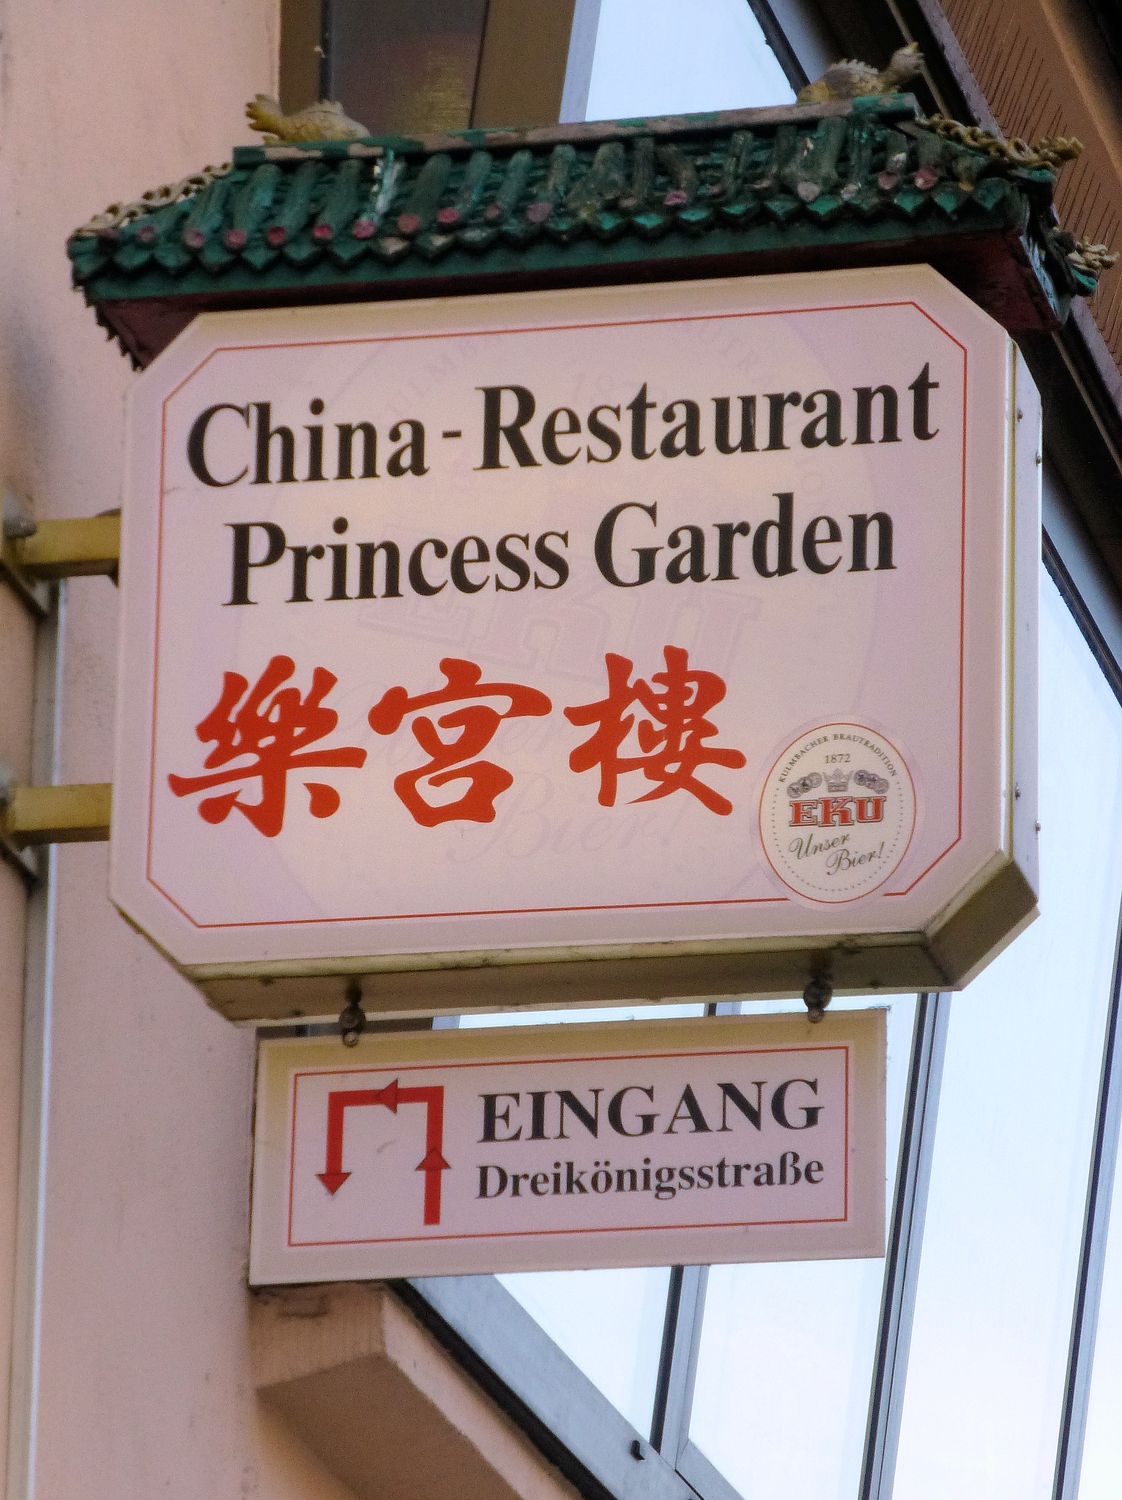 Princess Garden Phung Au Ngoc Linh 4 Bewertungen Erlangen